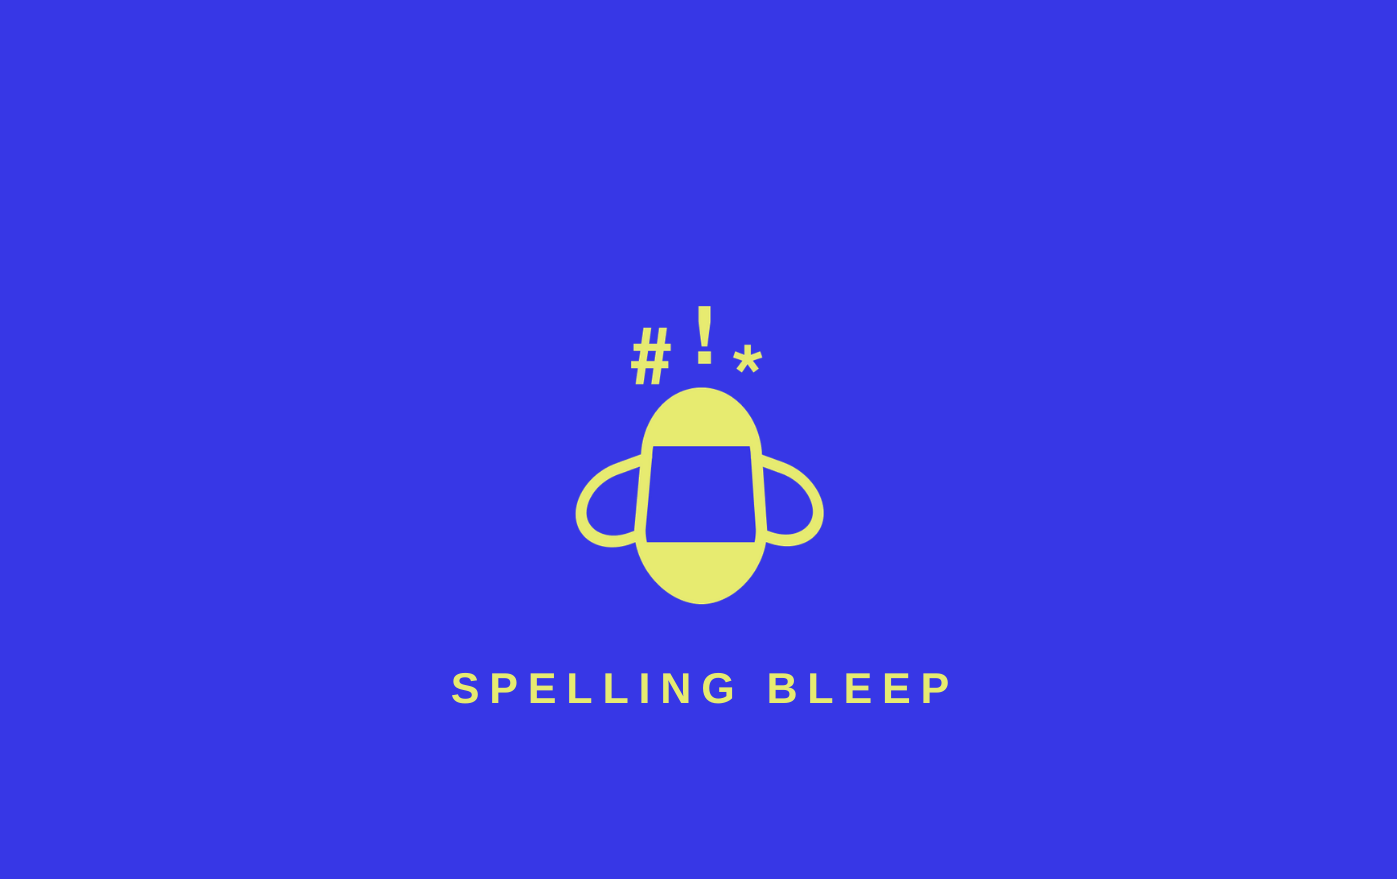 Spelling bleep logo on a blue field